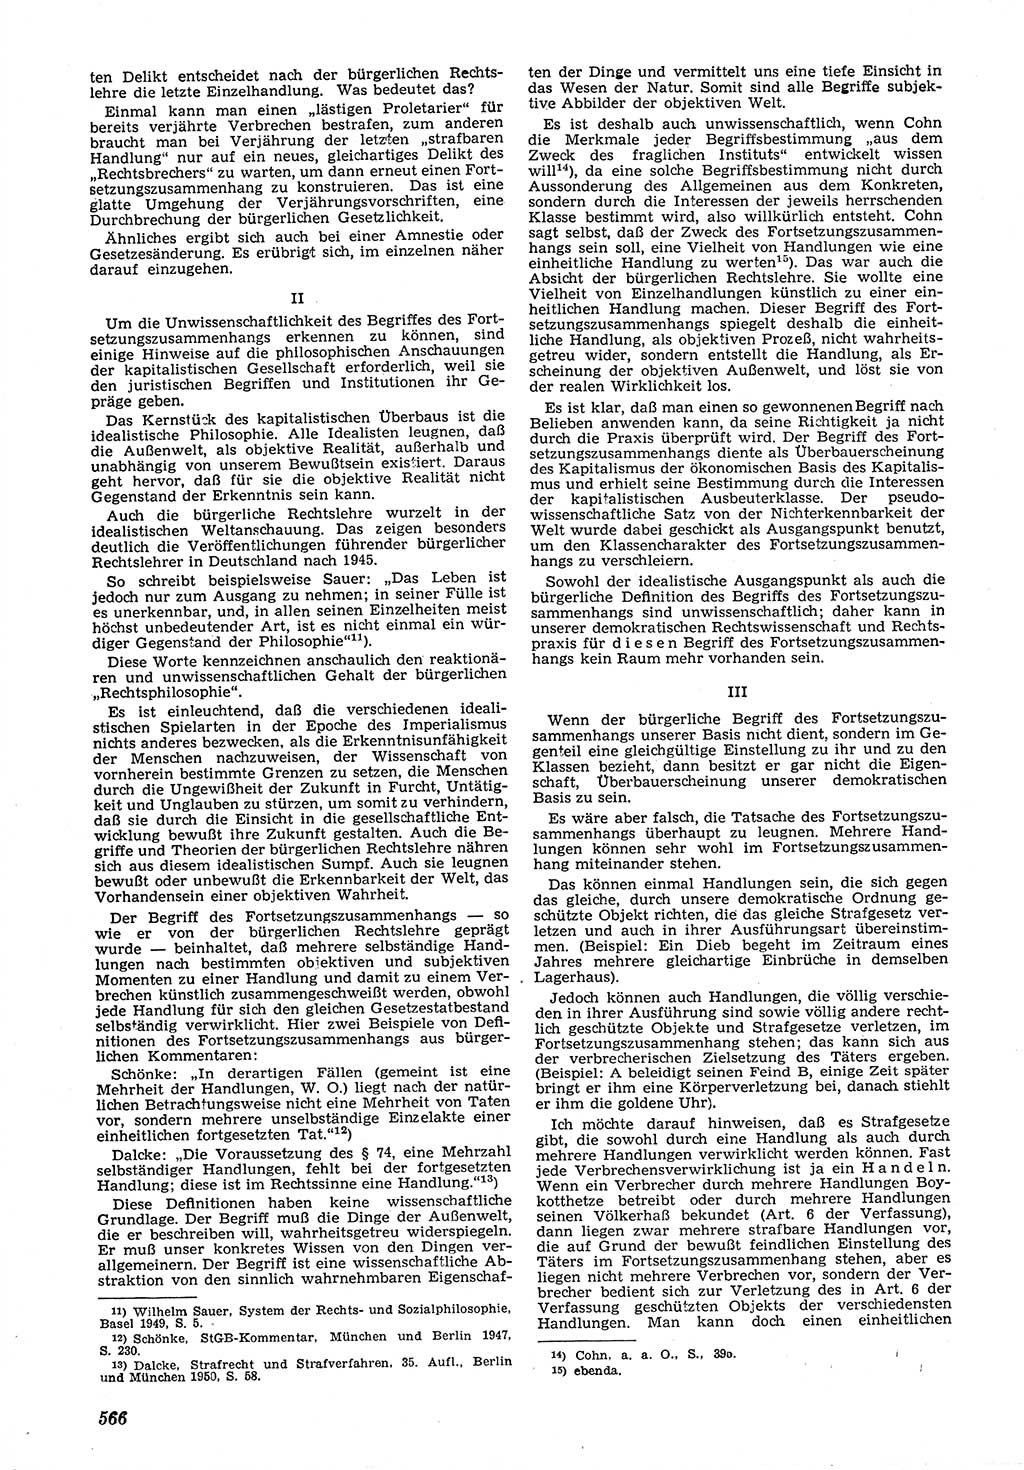 Neue Justiz (NJ), Zeitschrift für Recht und Rechtswissenschaft [Deutsche Demokratische Republik (DDR)], 6. Jahrgang 1952, Seite 566 (NJ DDR 1952, S. 566)